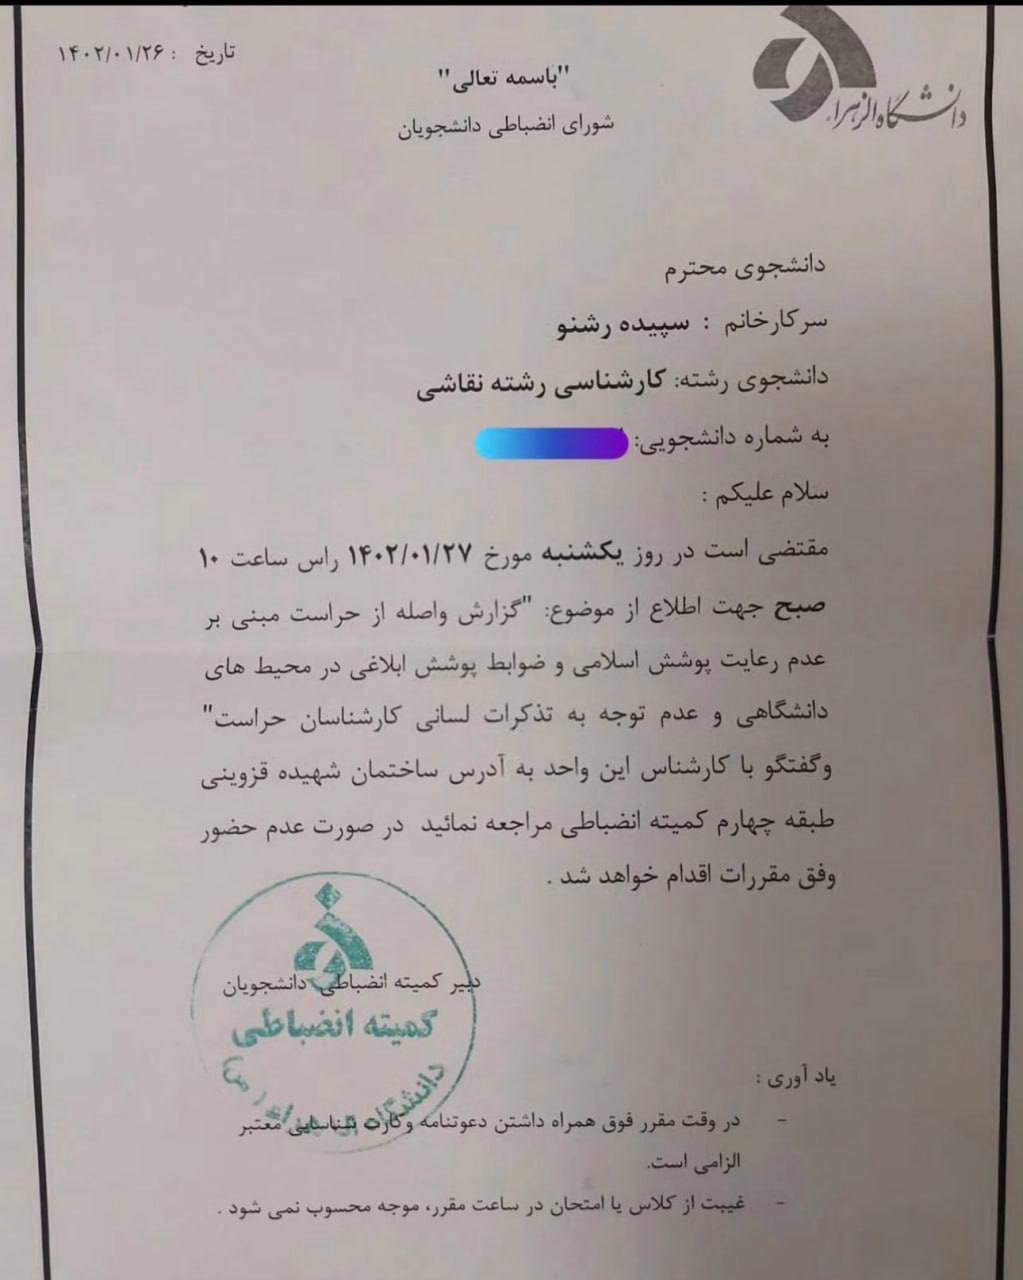 دانشگاه الزهرا سپیده رشنو را به دلیل عدم رعایت شئونات اسلامی تعلیق کرد